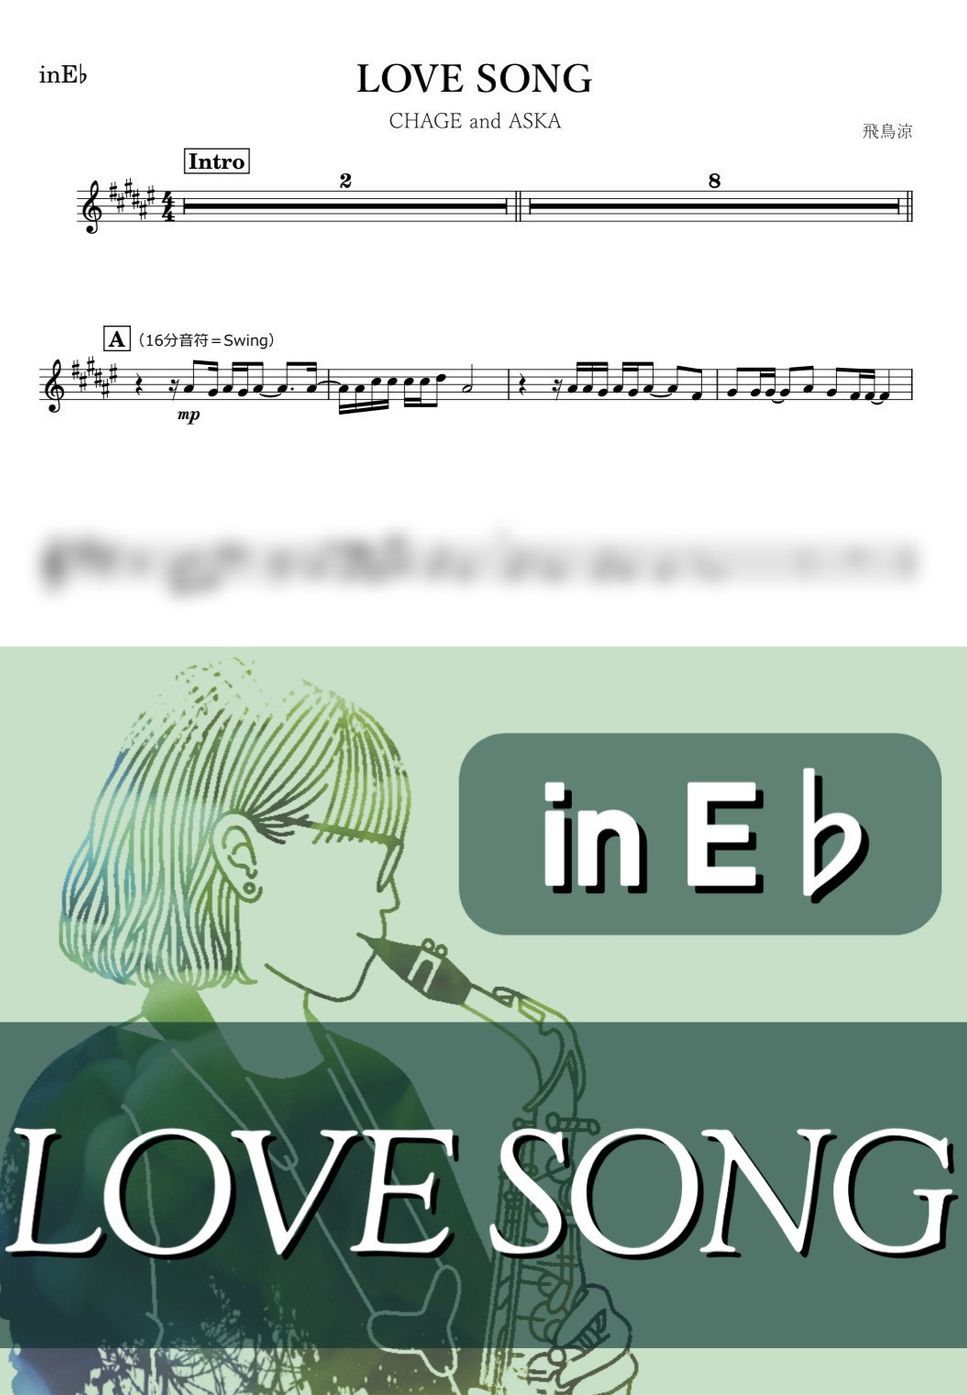 CHAGE and ASKA - LOVE SONG (E♭) by kanamusic